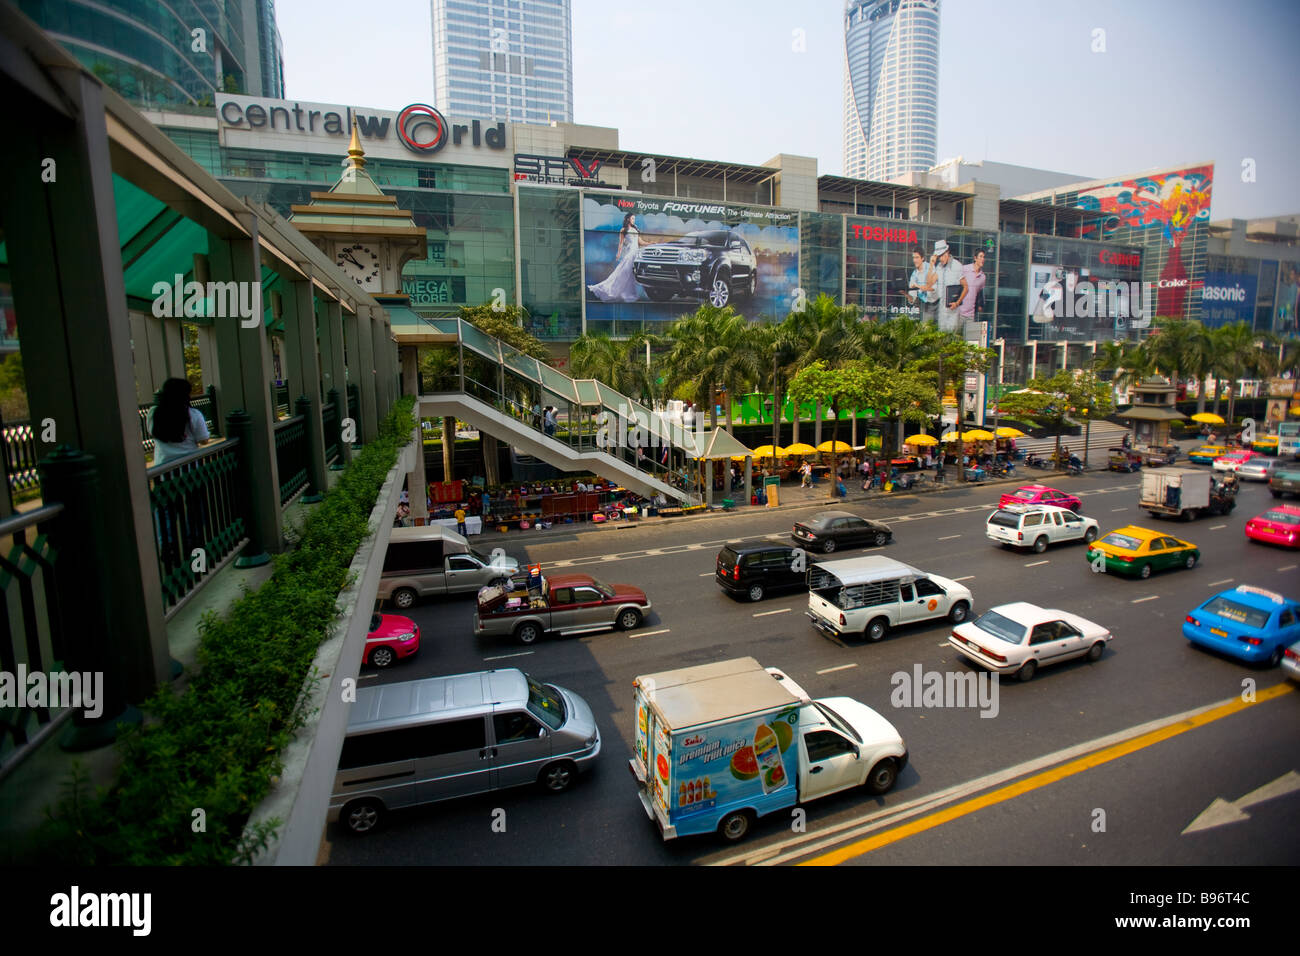 Central World Shopping Center Bangkok Thailand Stock Photo